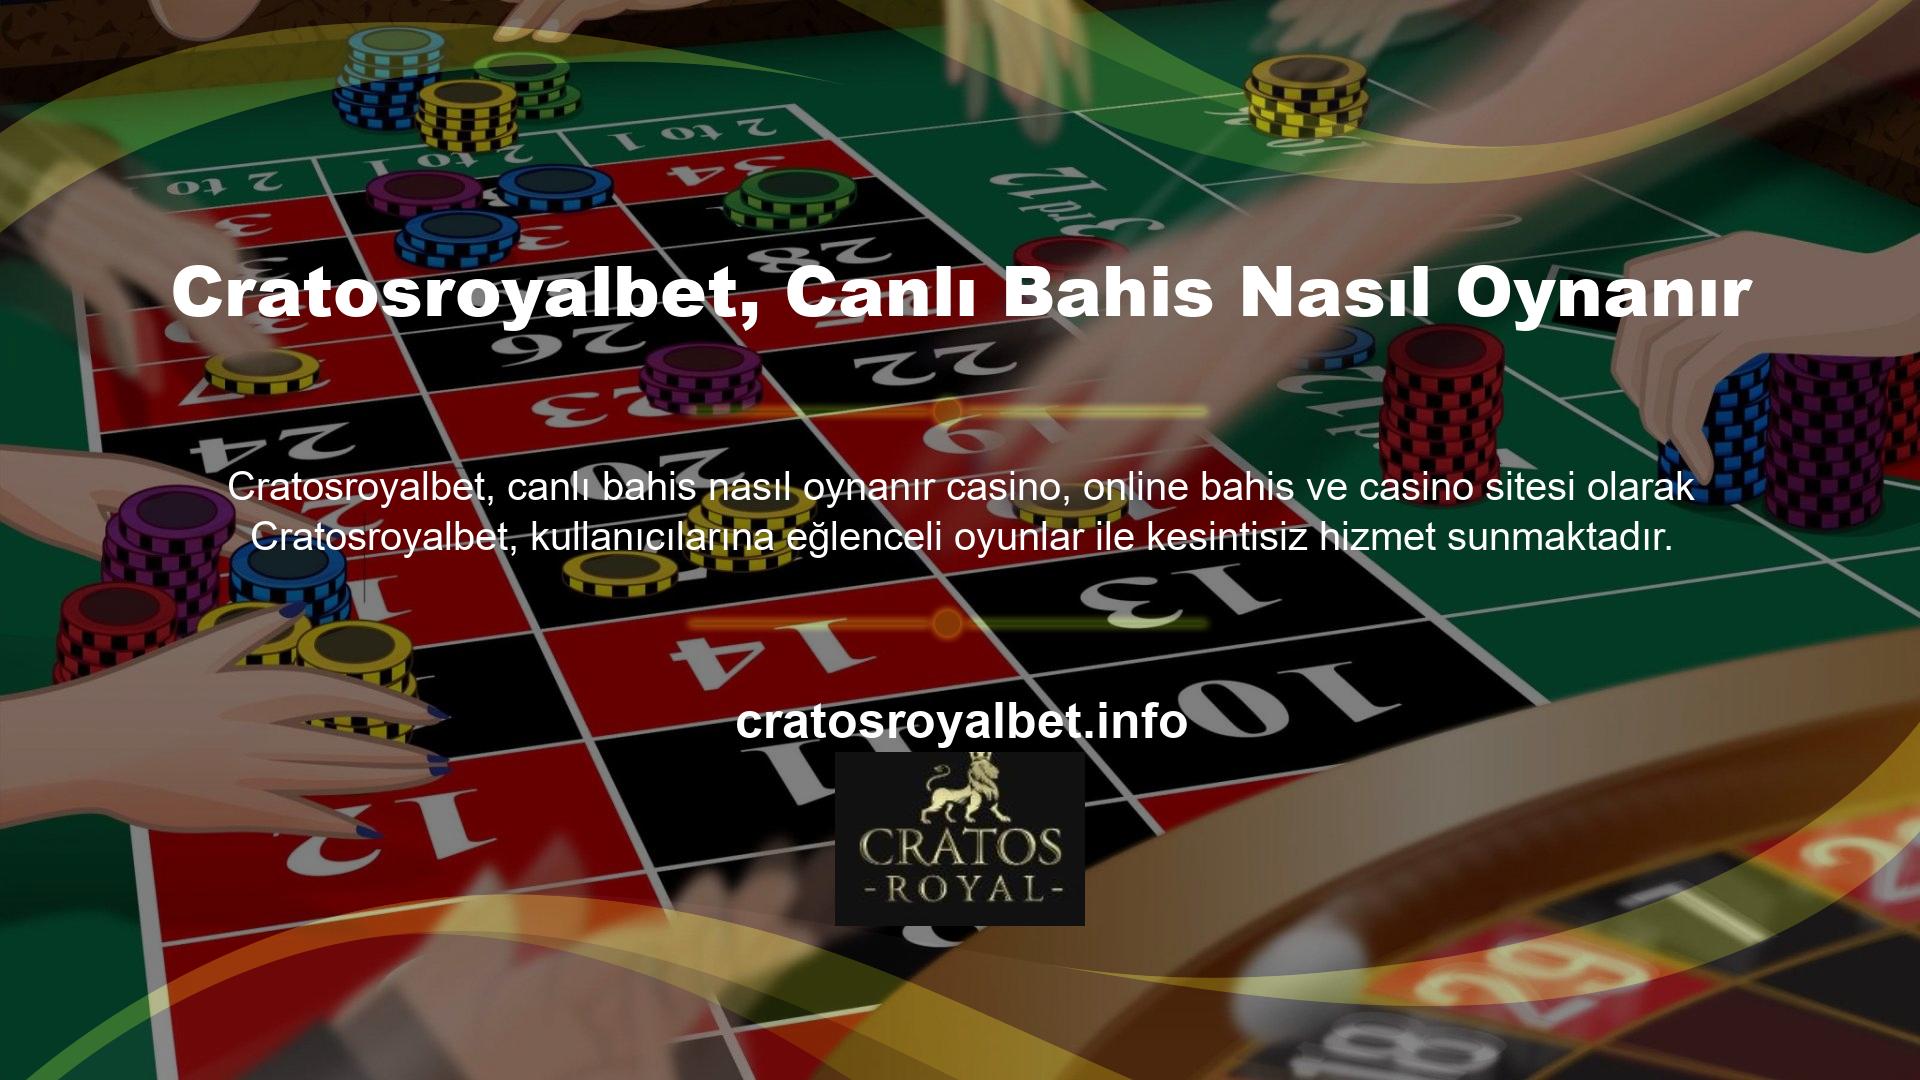 Kısa sürede çevrimiçi casino endüstrisinde önemli bir konuma sahip olan Cratosroyalbet, hızlı bir büyüme ve başarı elde etti